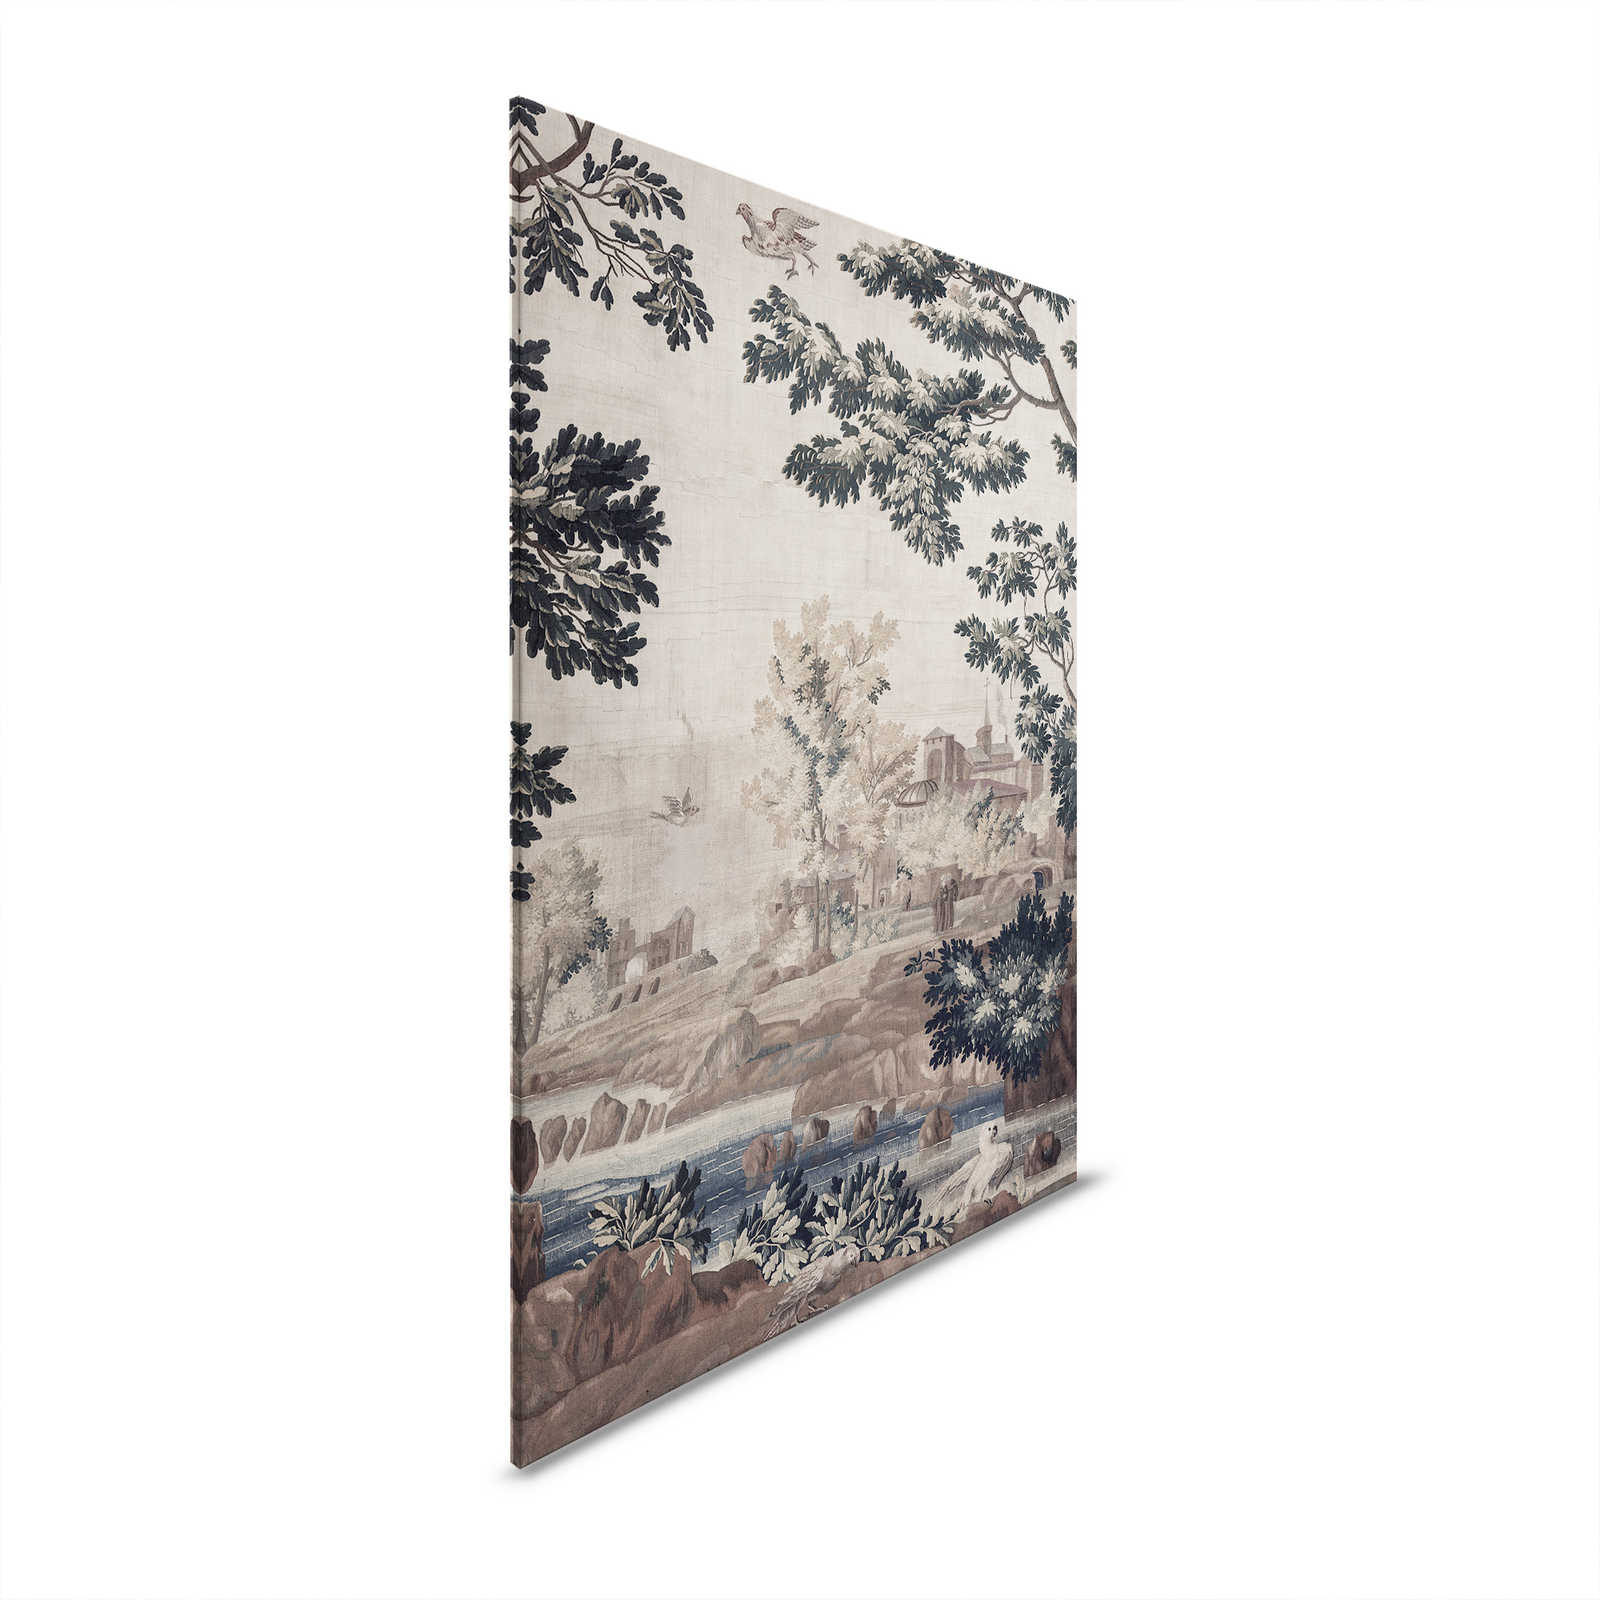 Gobelin Gallery 1 - Quadro di paesaggio su tela arazzo storico - 1,20 m x 0,80 m
